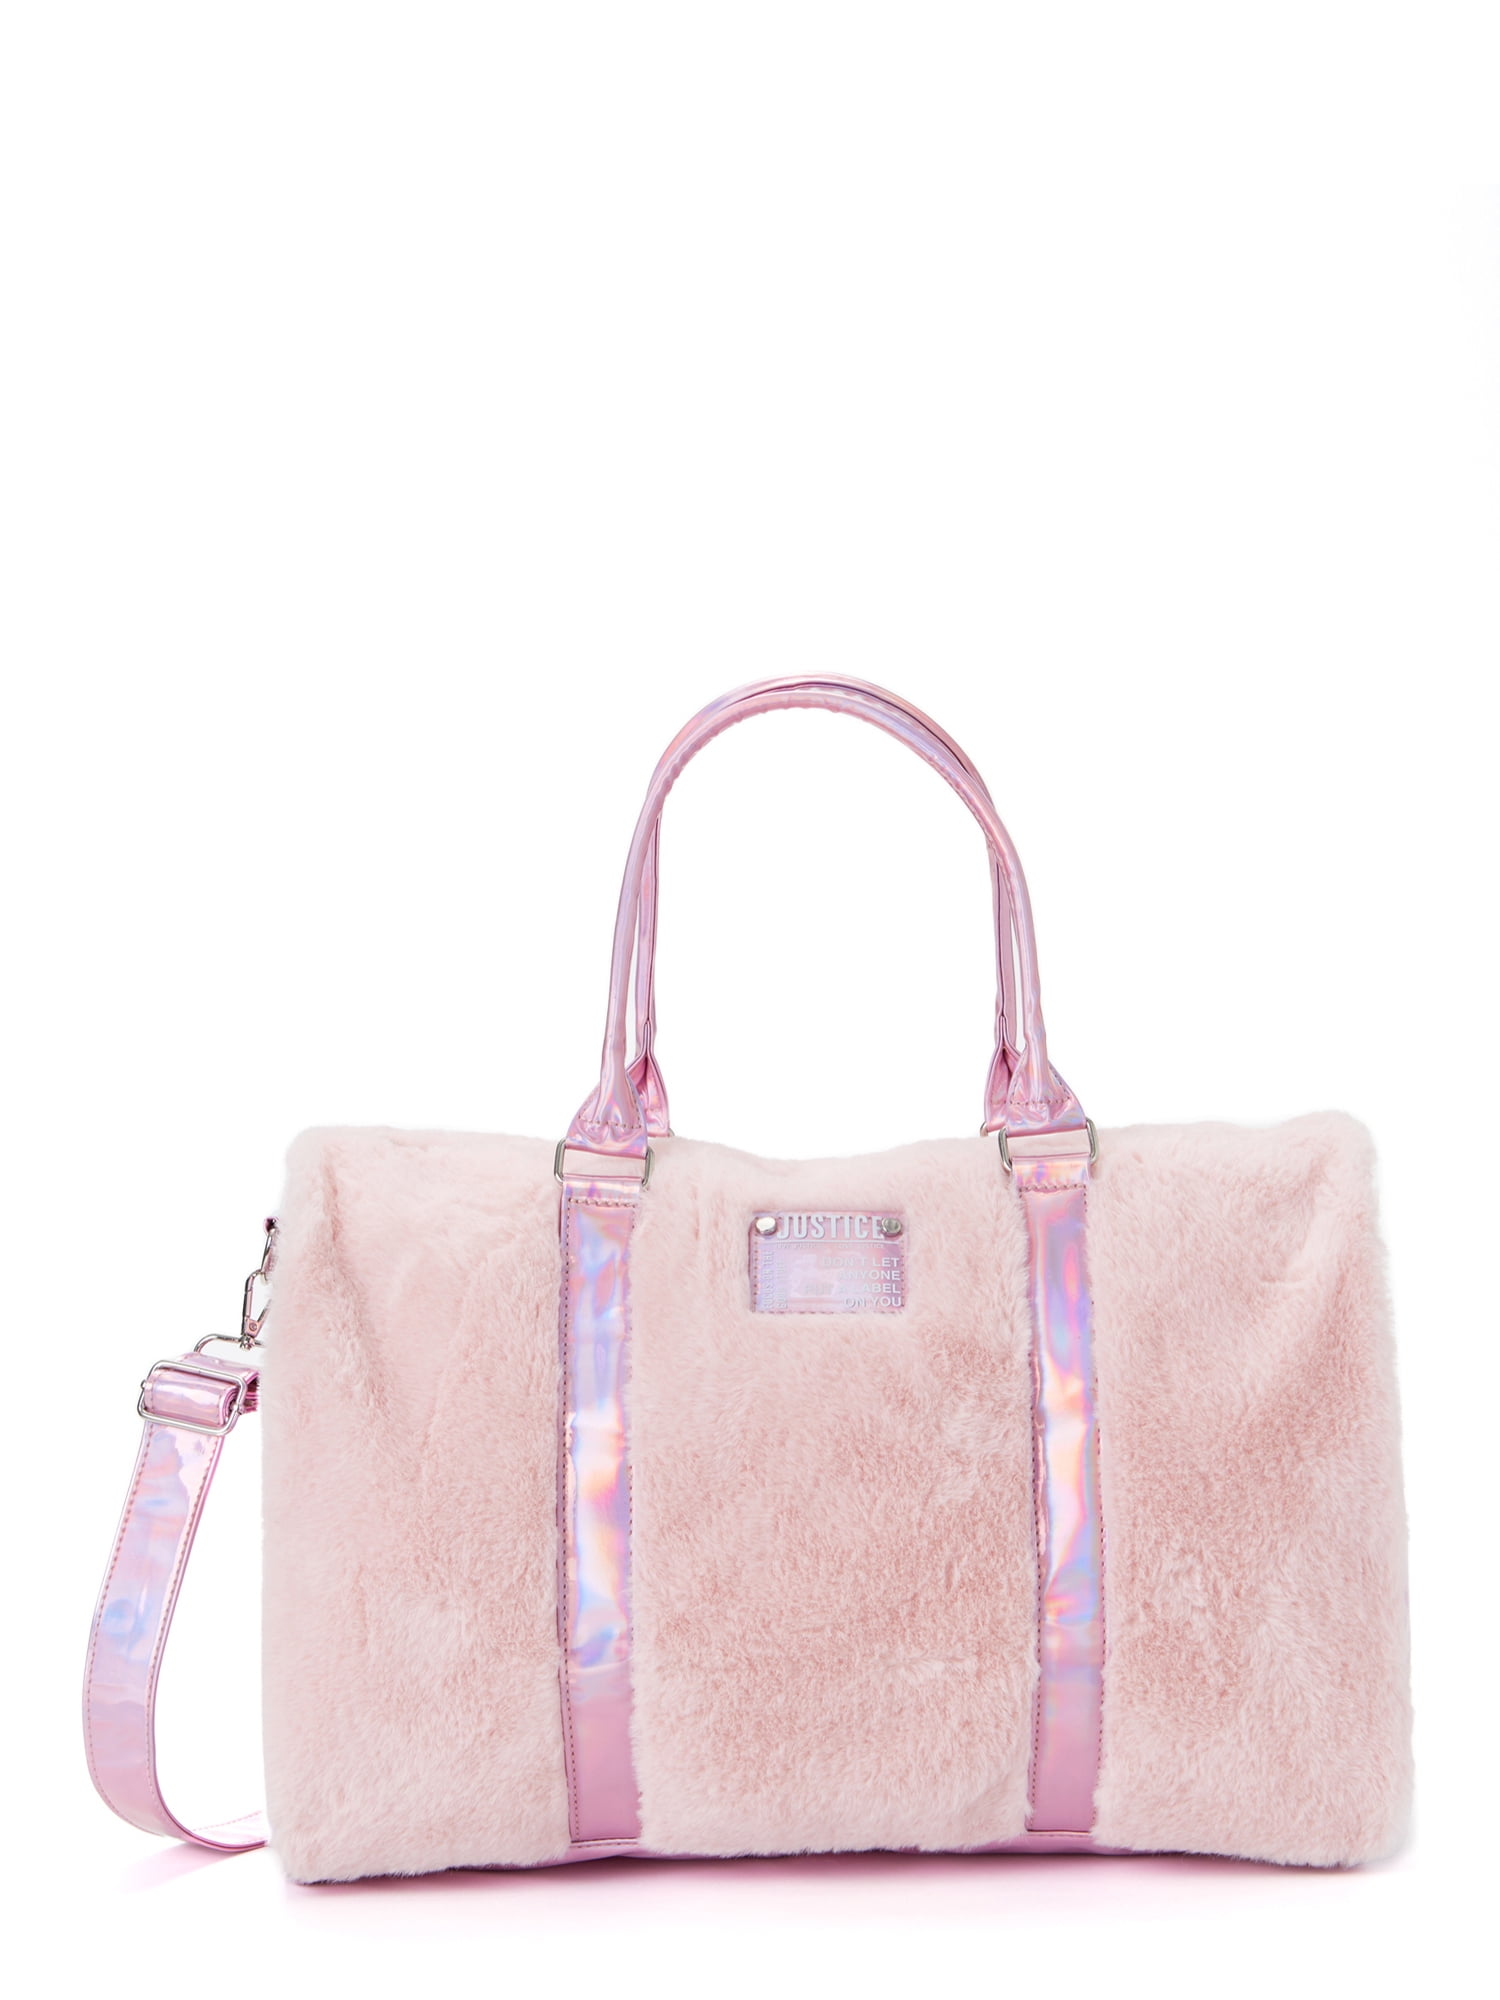 Justice Duffel Handbag Pink Faux Fur - Walmart.com